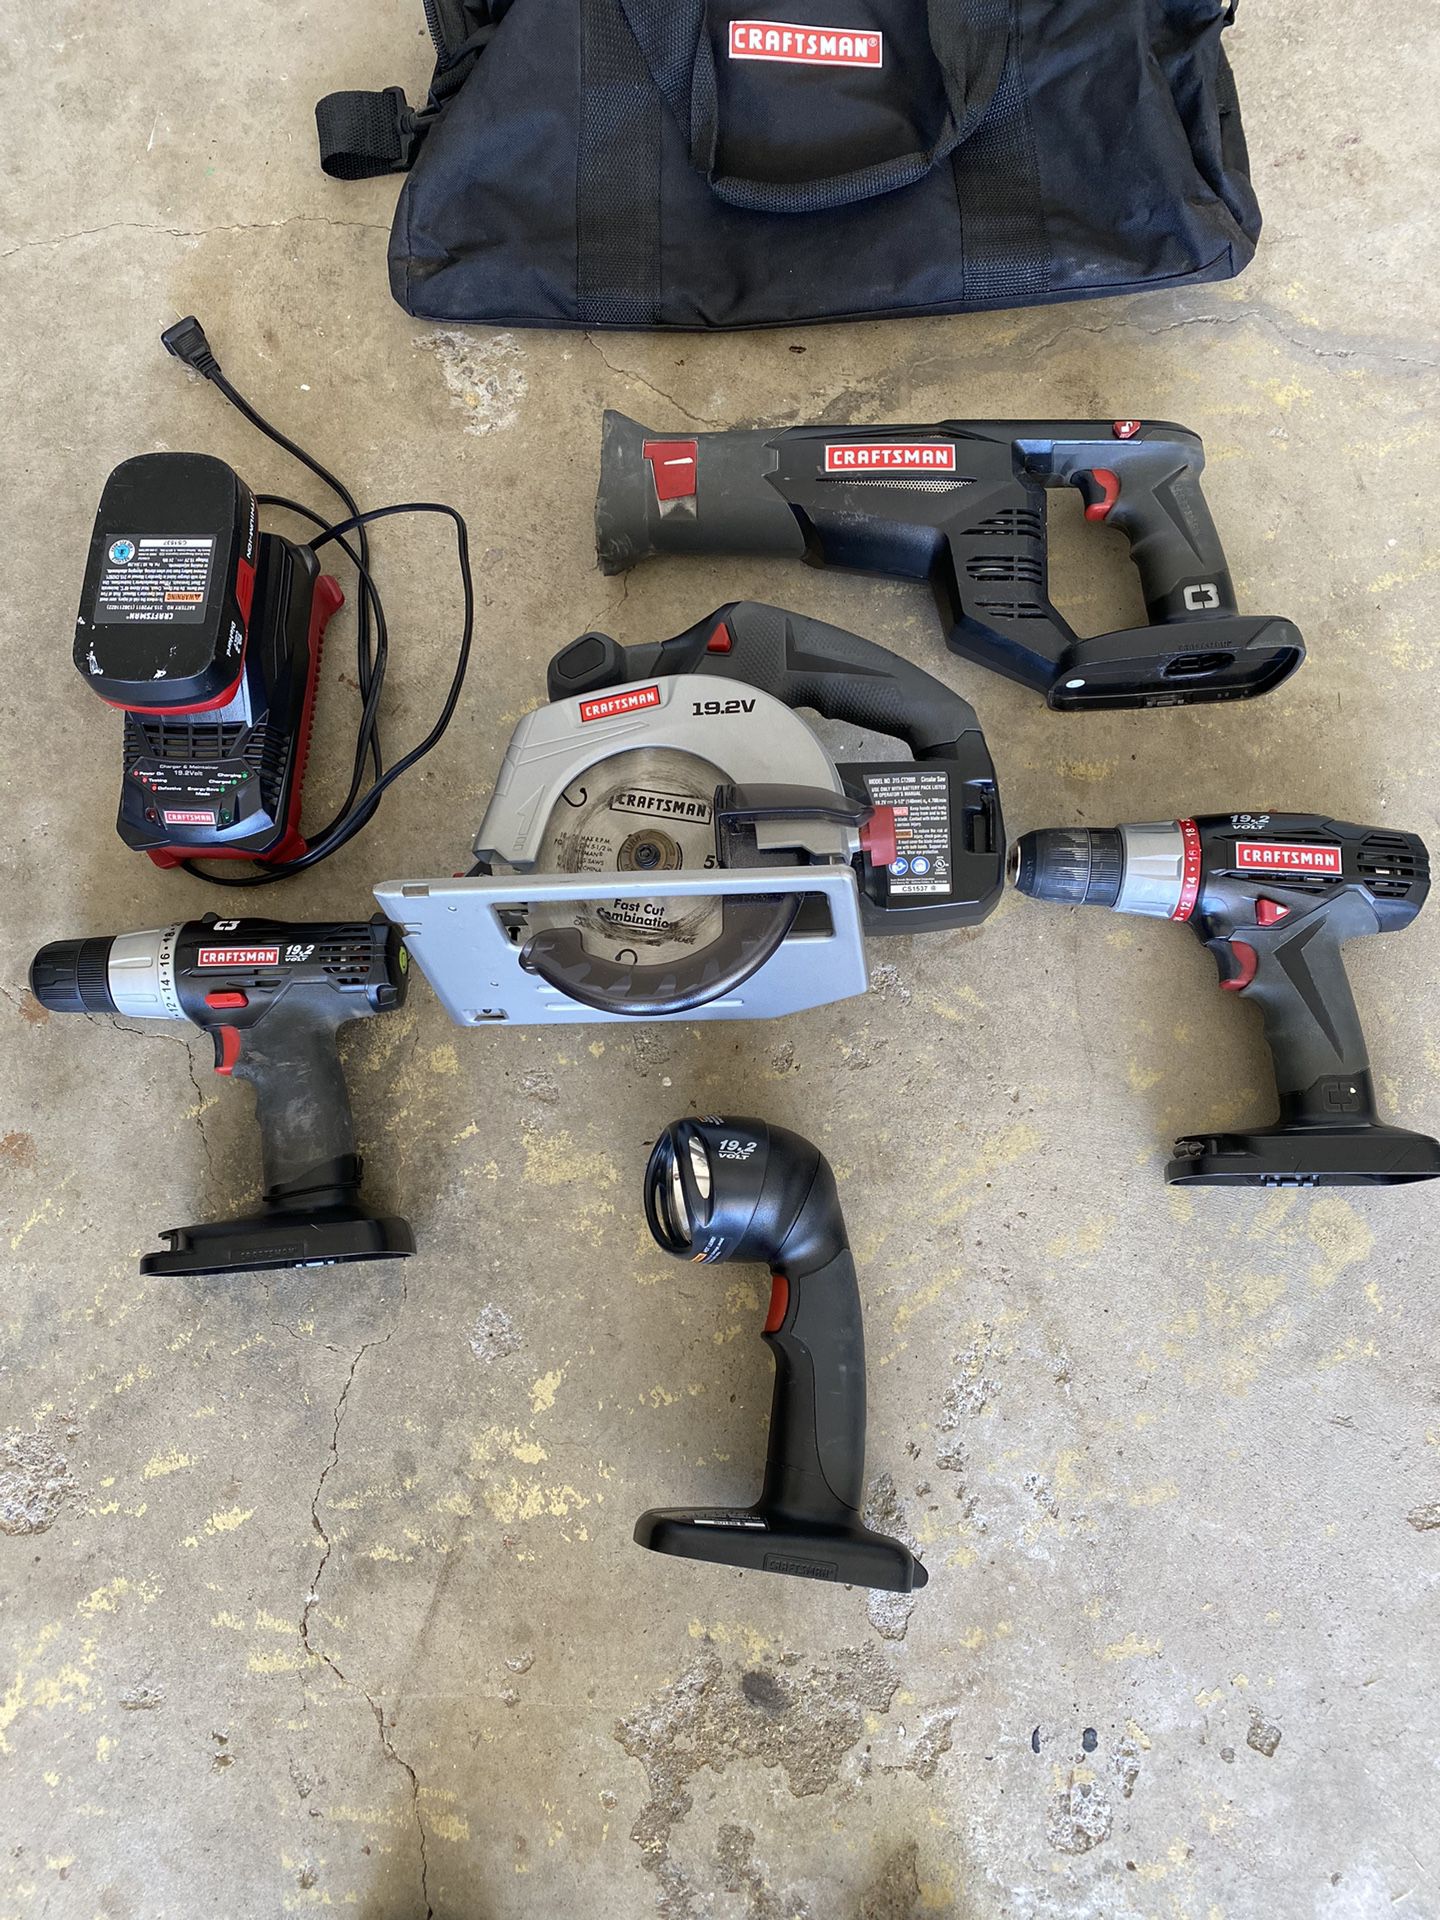 Craftsman Power Tool Set